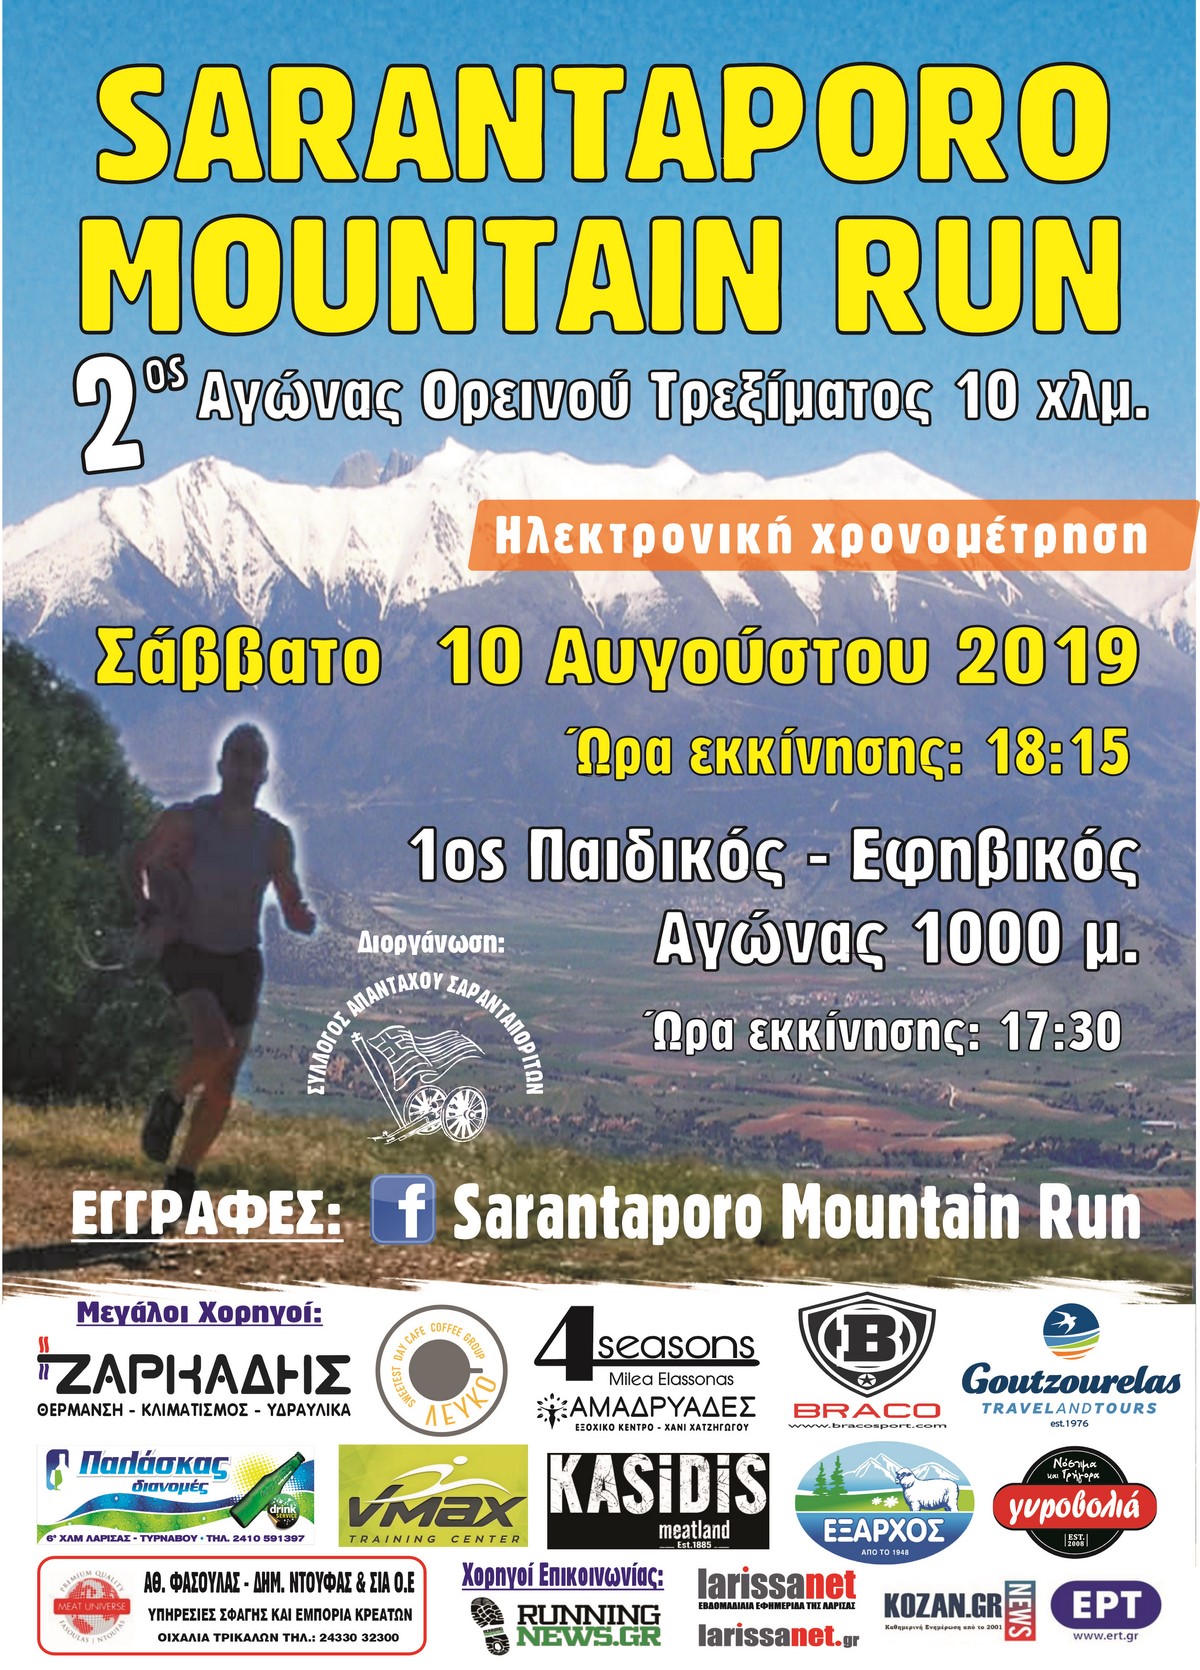 Δηλώστε συμμετοχή στον αγώνα Sarantaporo Mountain Run